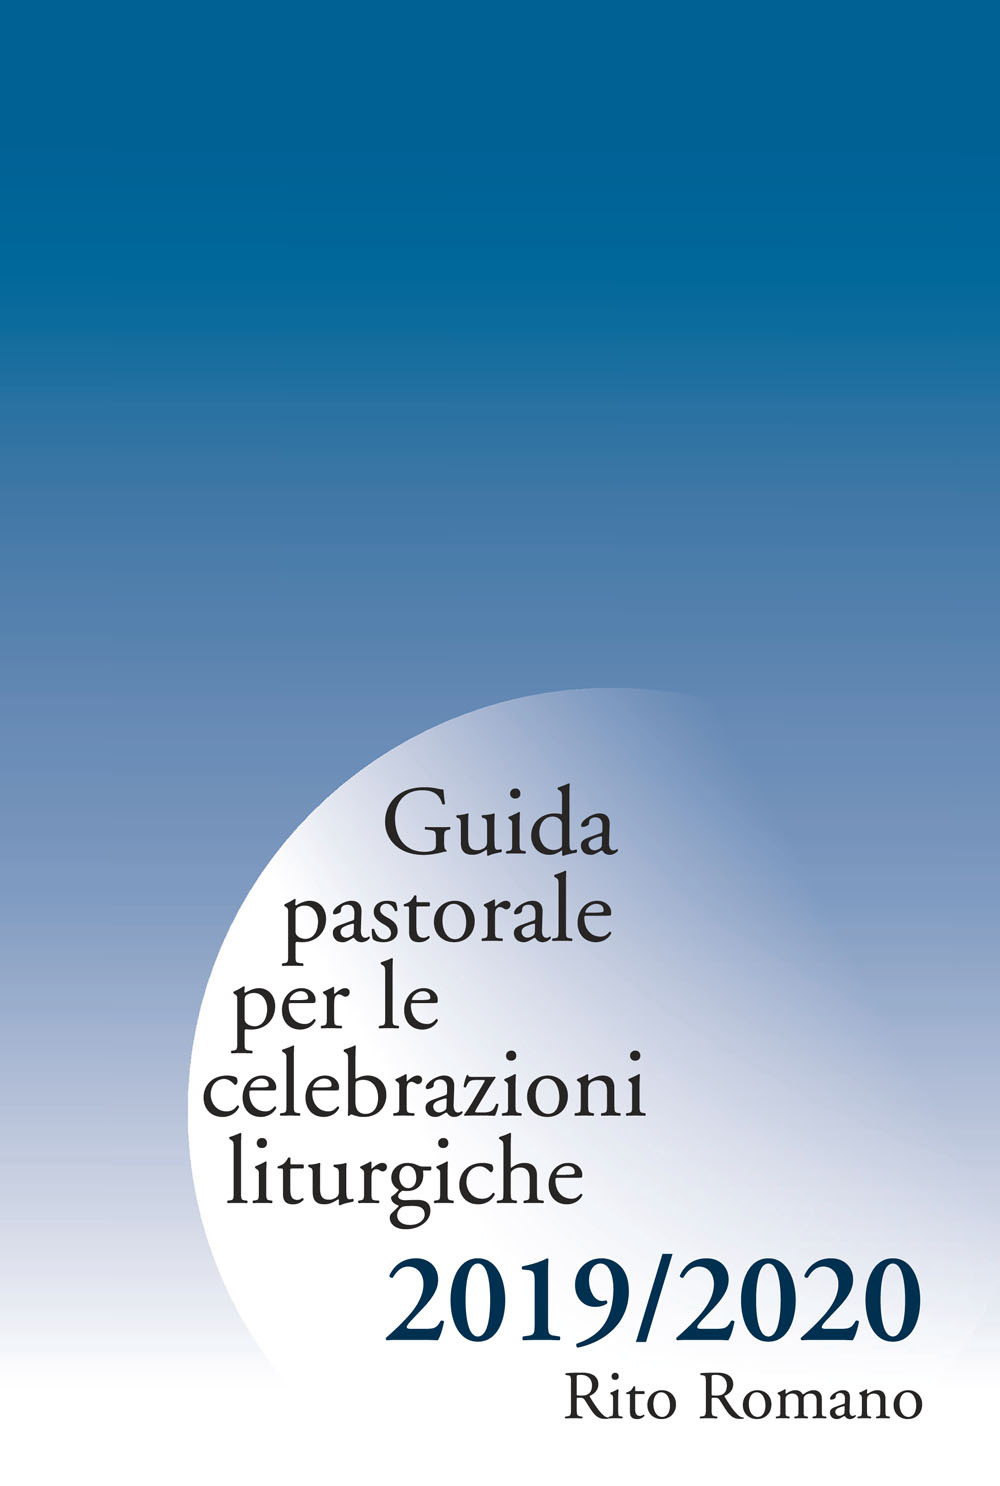 Guida pastorale per le celebrazioni liturgiche. Rito romano 2019-2020